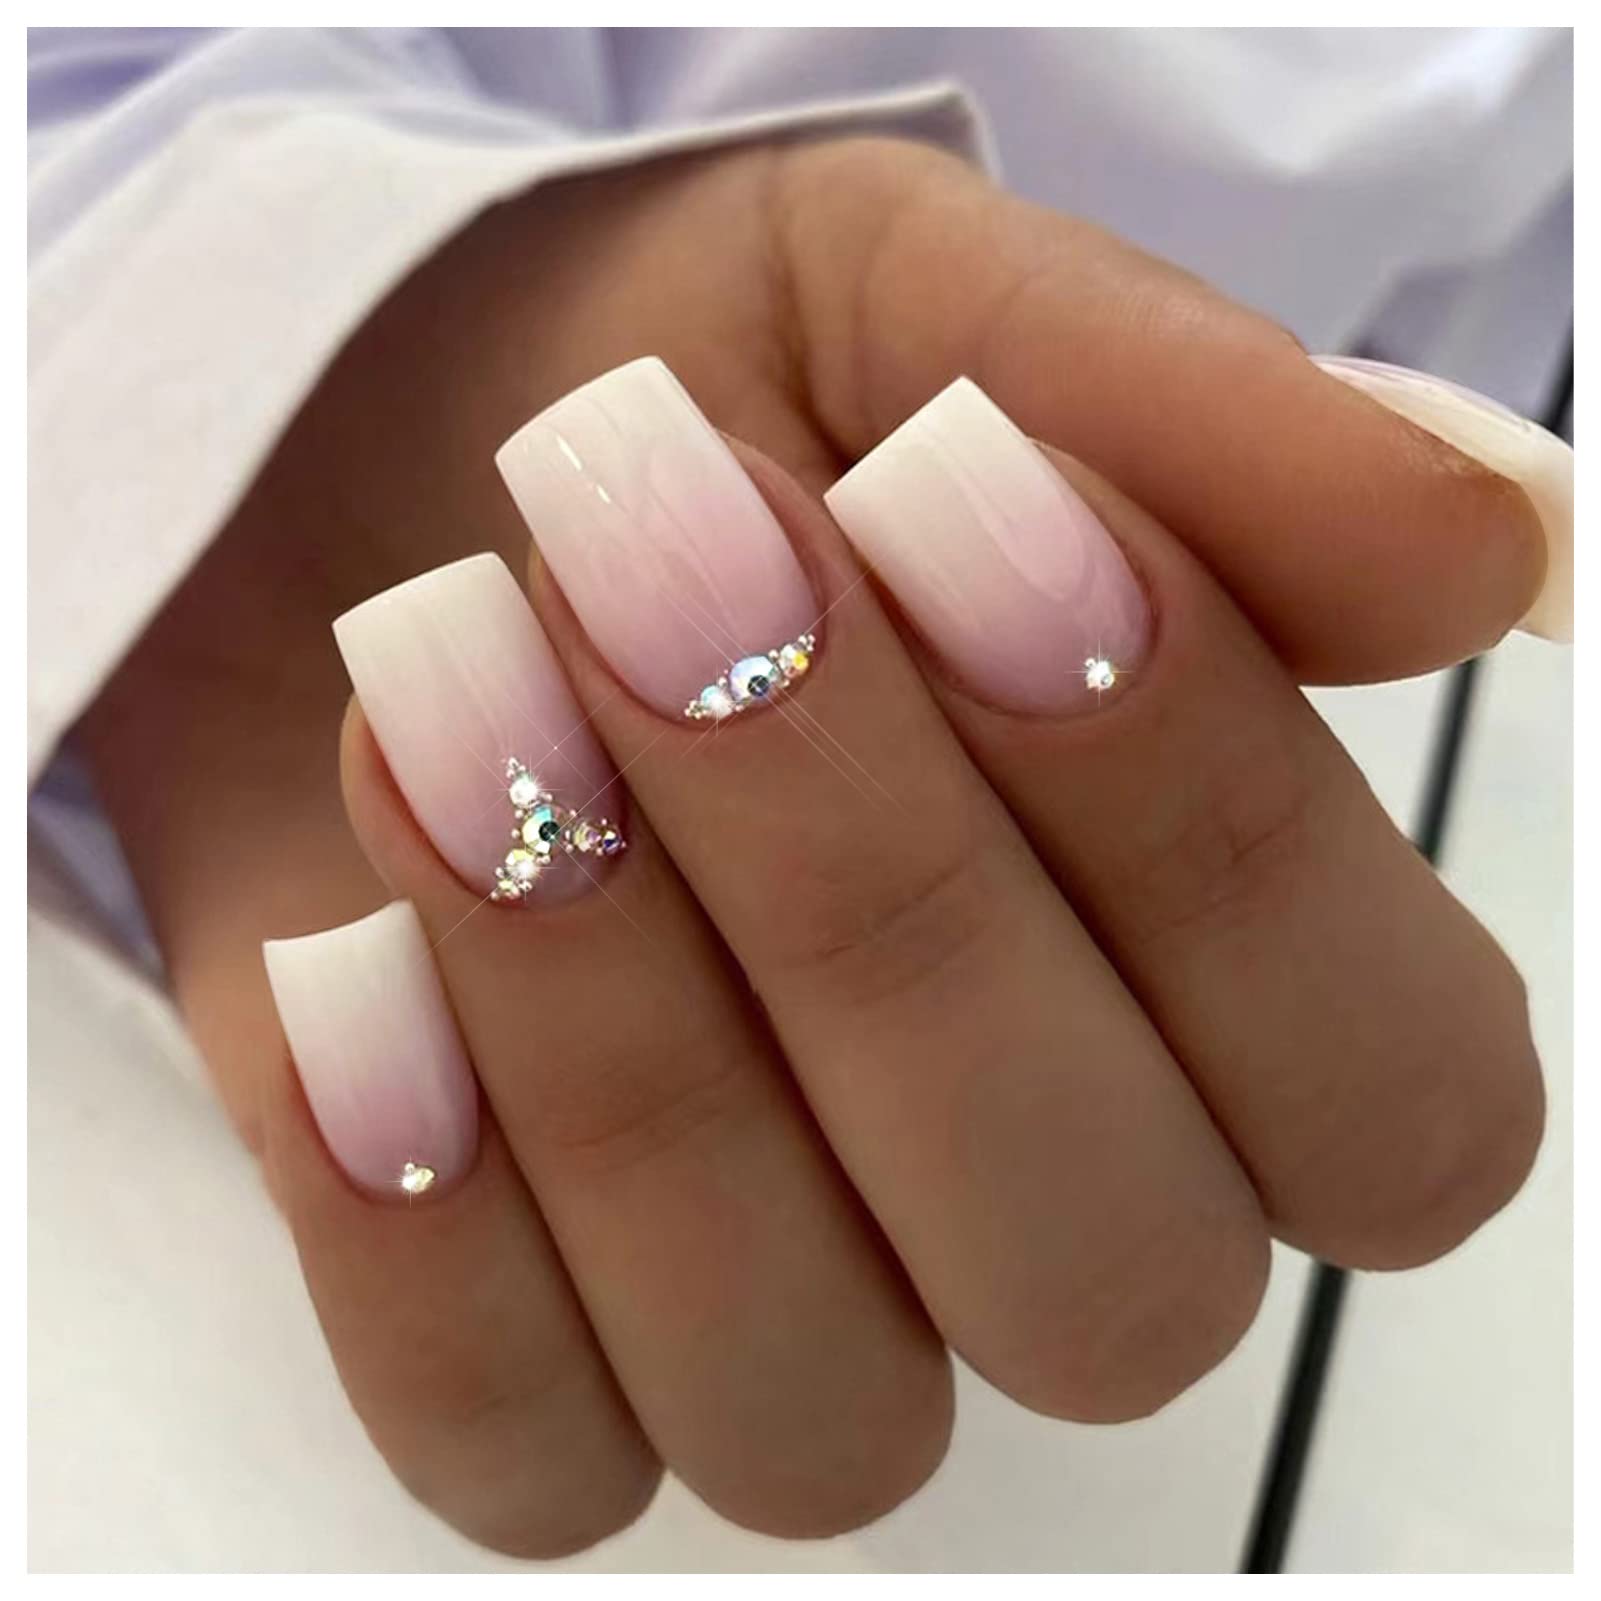 No Complaints Medium Square White Glitter Press On Nails – RainyRoses